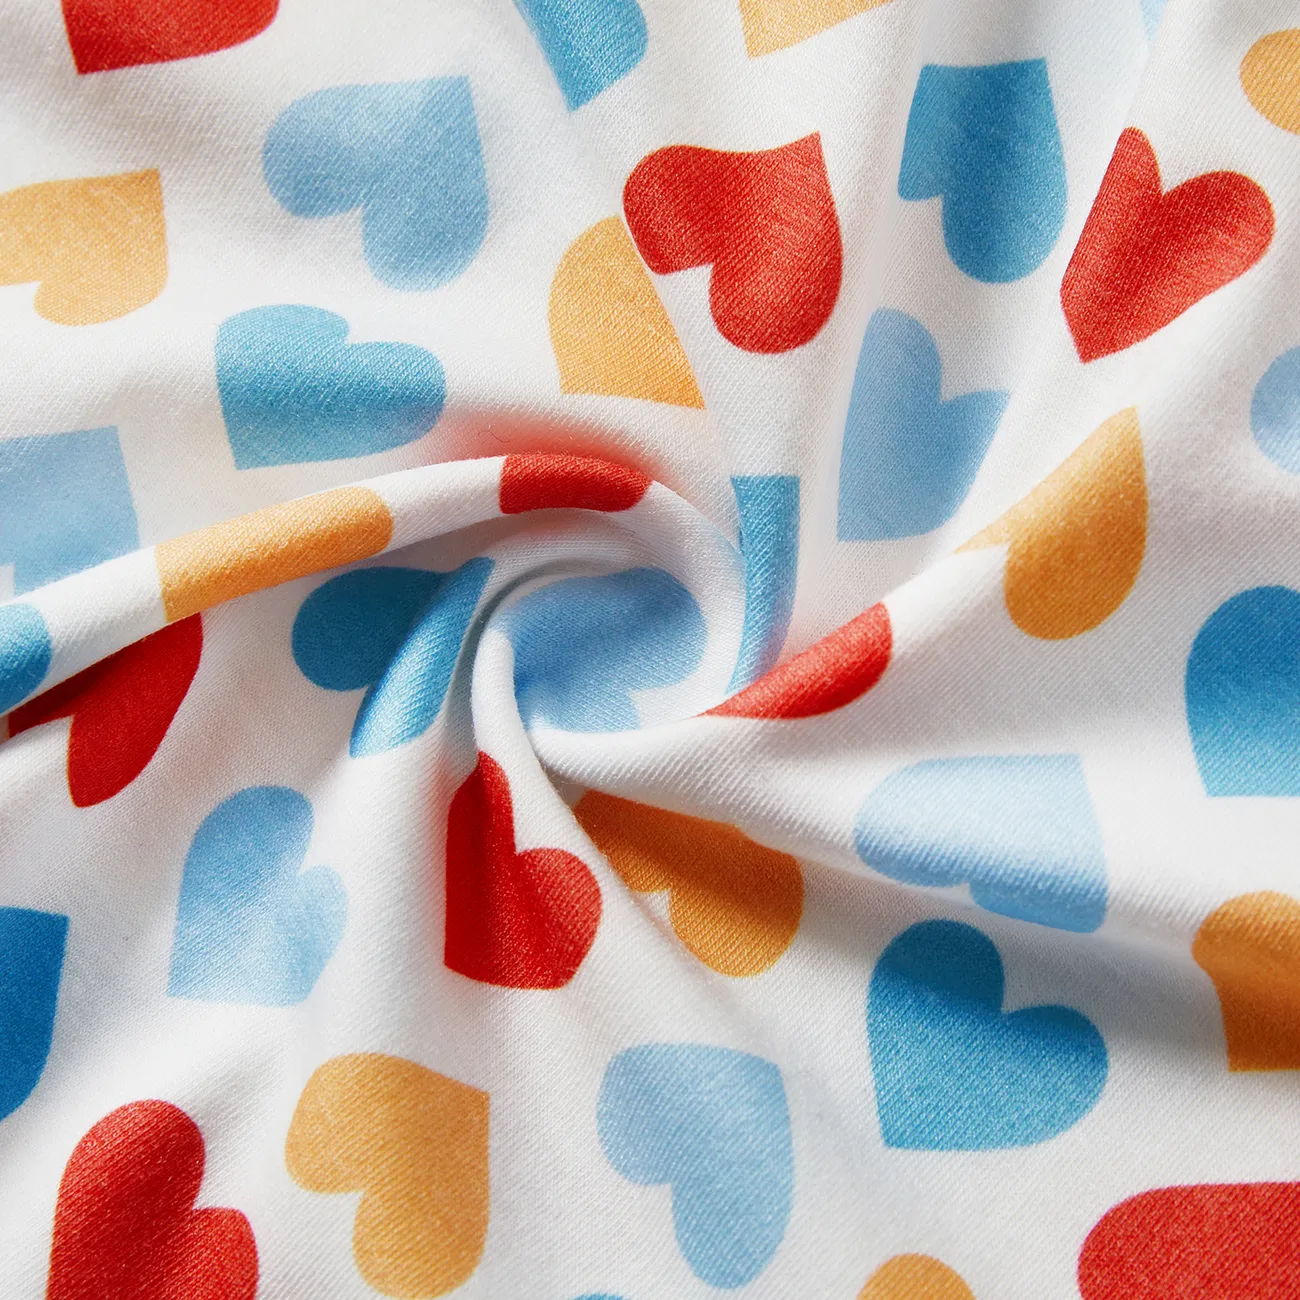 vestido lencero con diseño de lazo y estampado de corazones de colores naia™ para niños pequeños/niñas Blanco big image 1